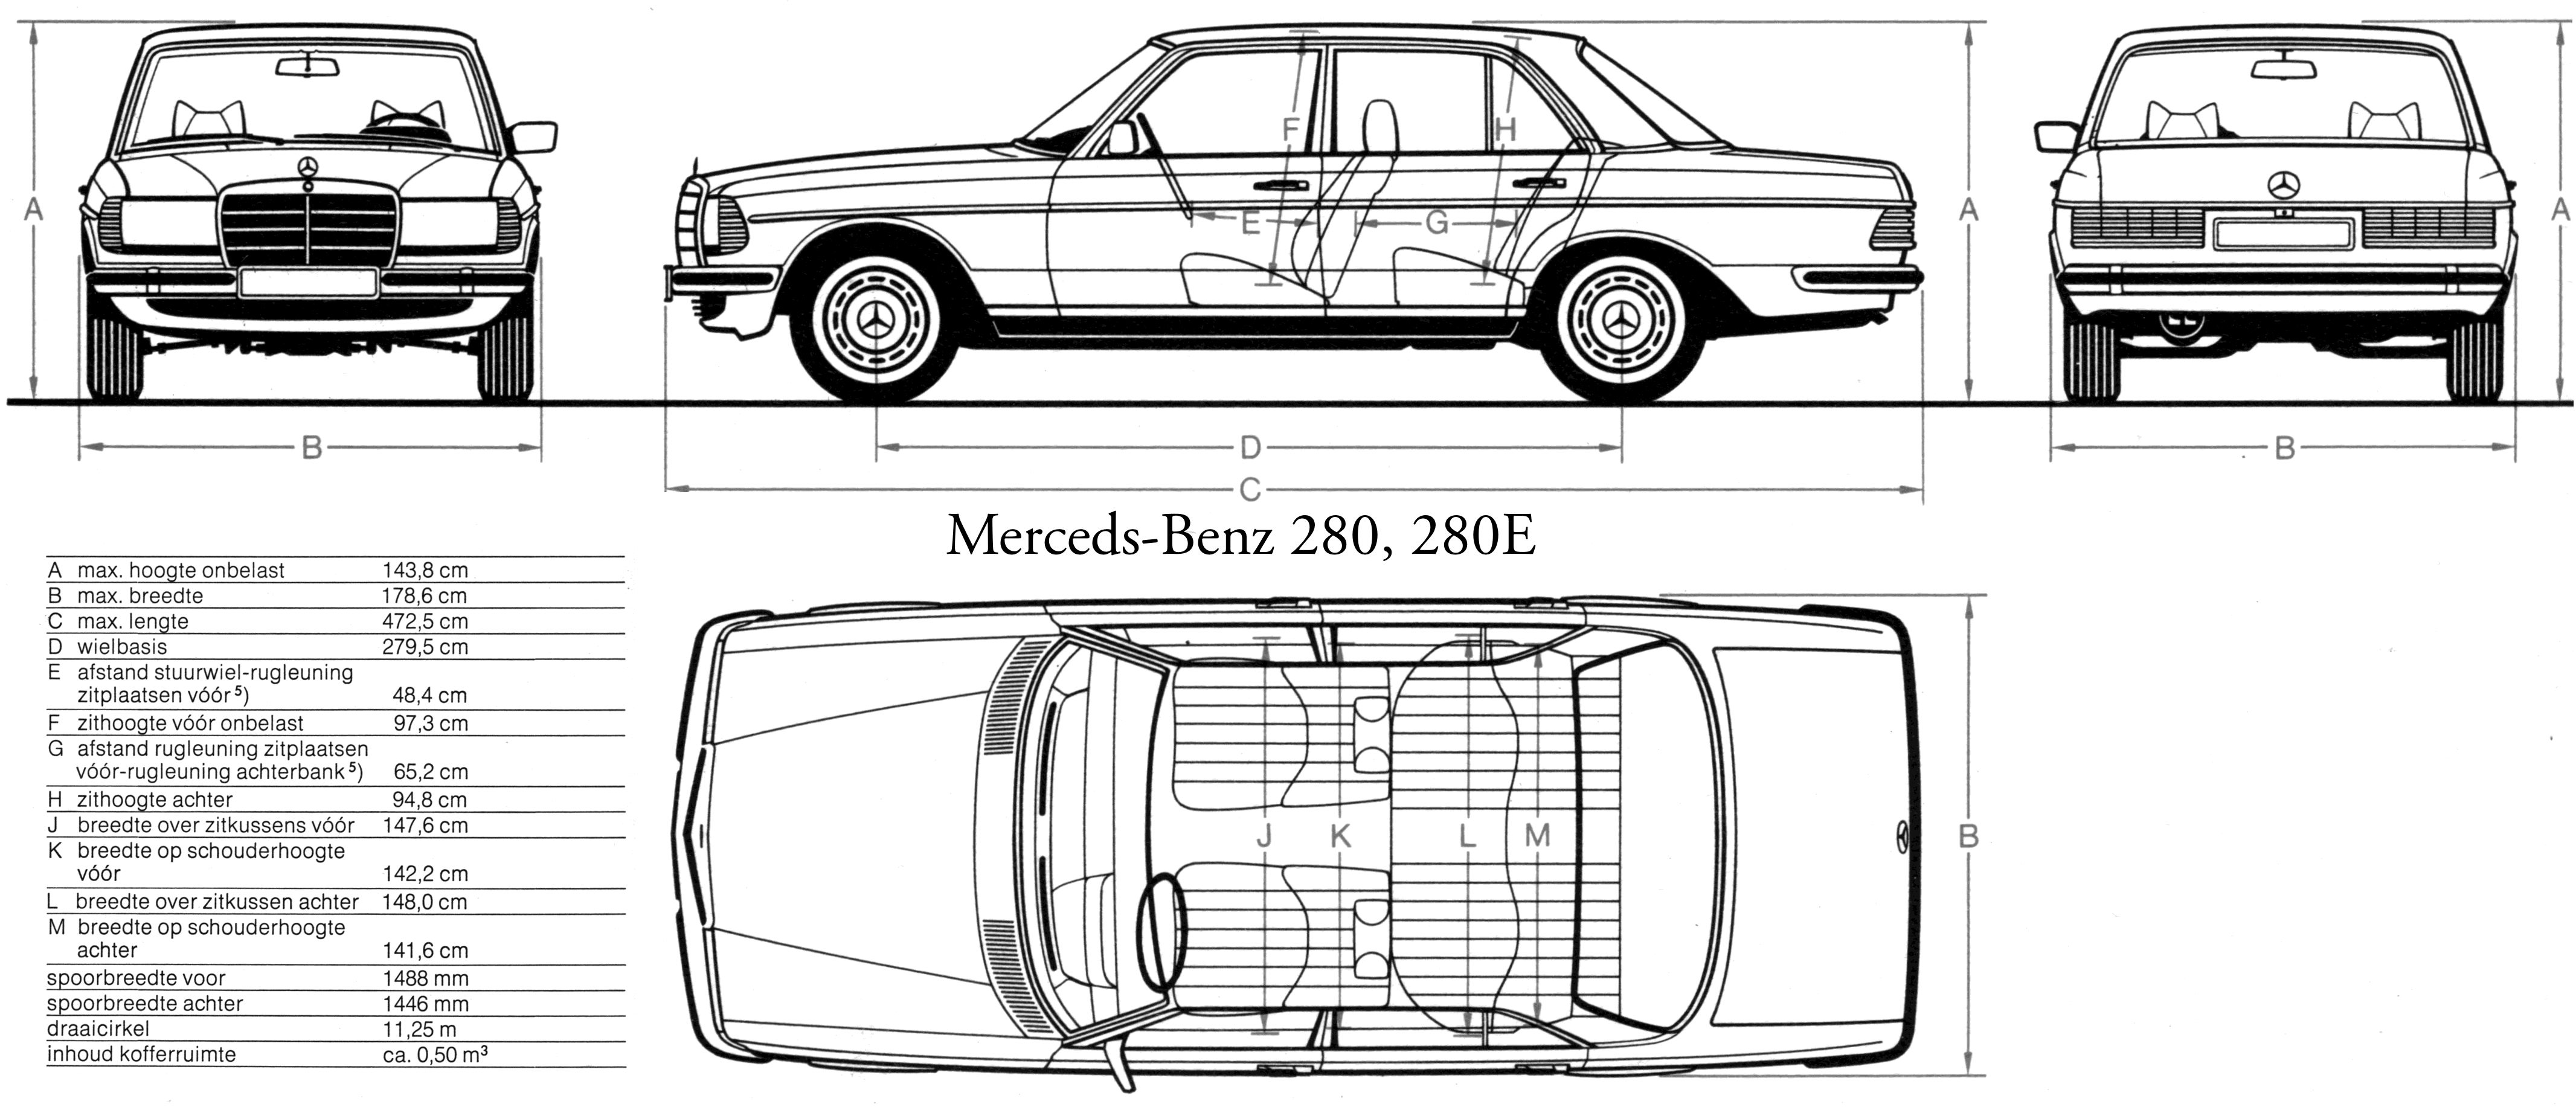 Mercedes-Benz W123 series blueprint